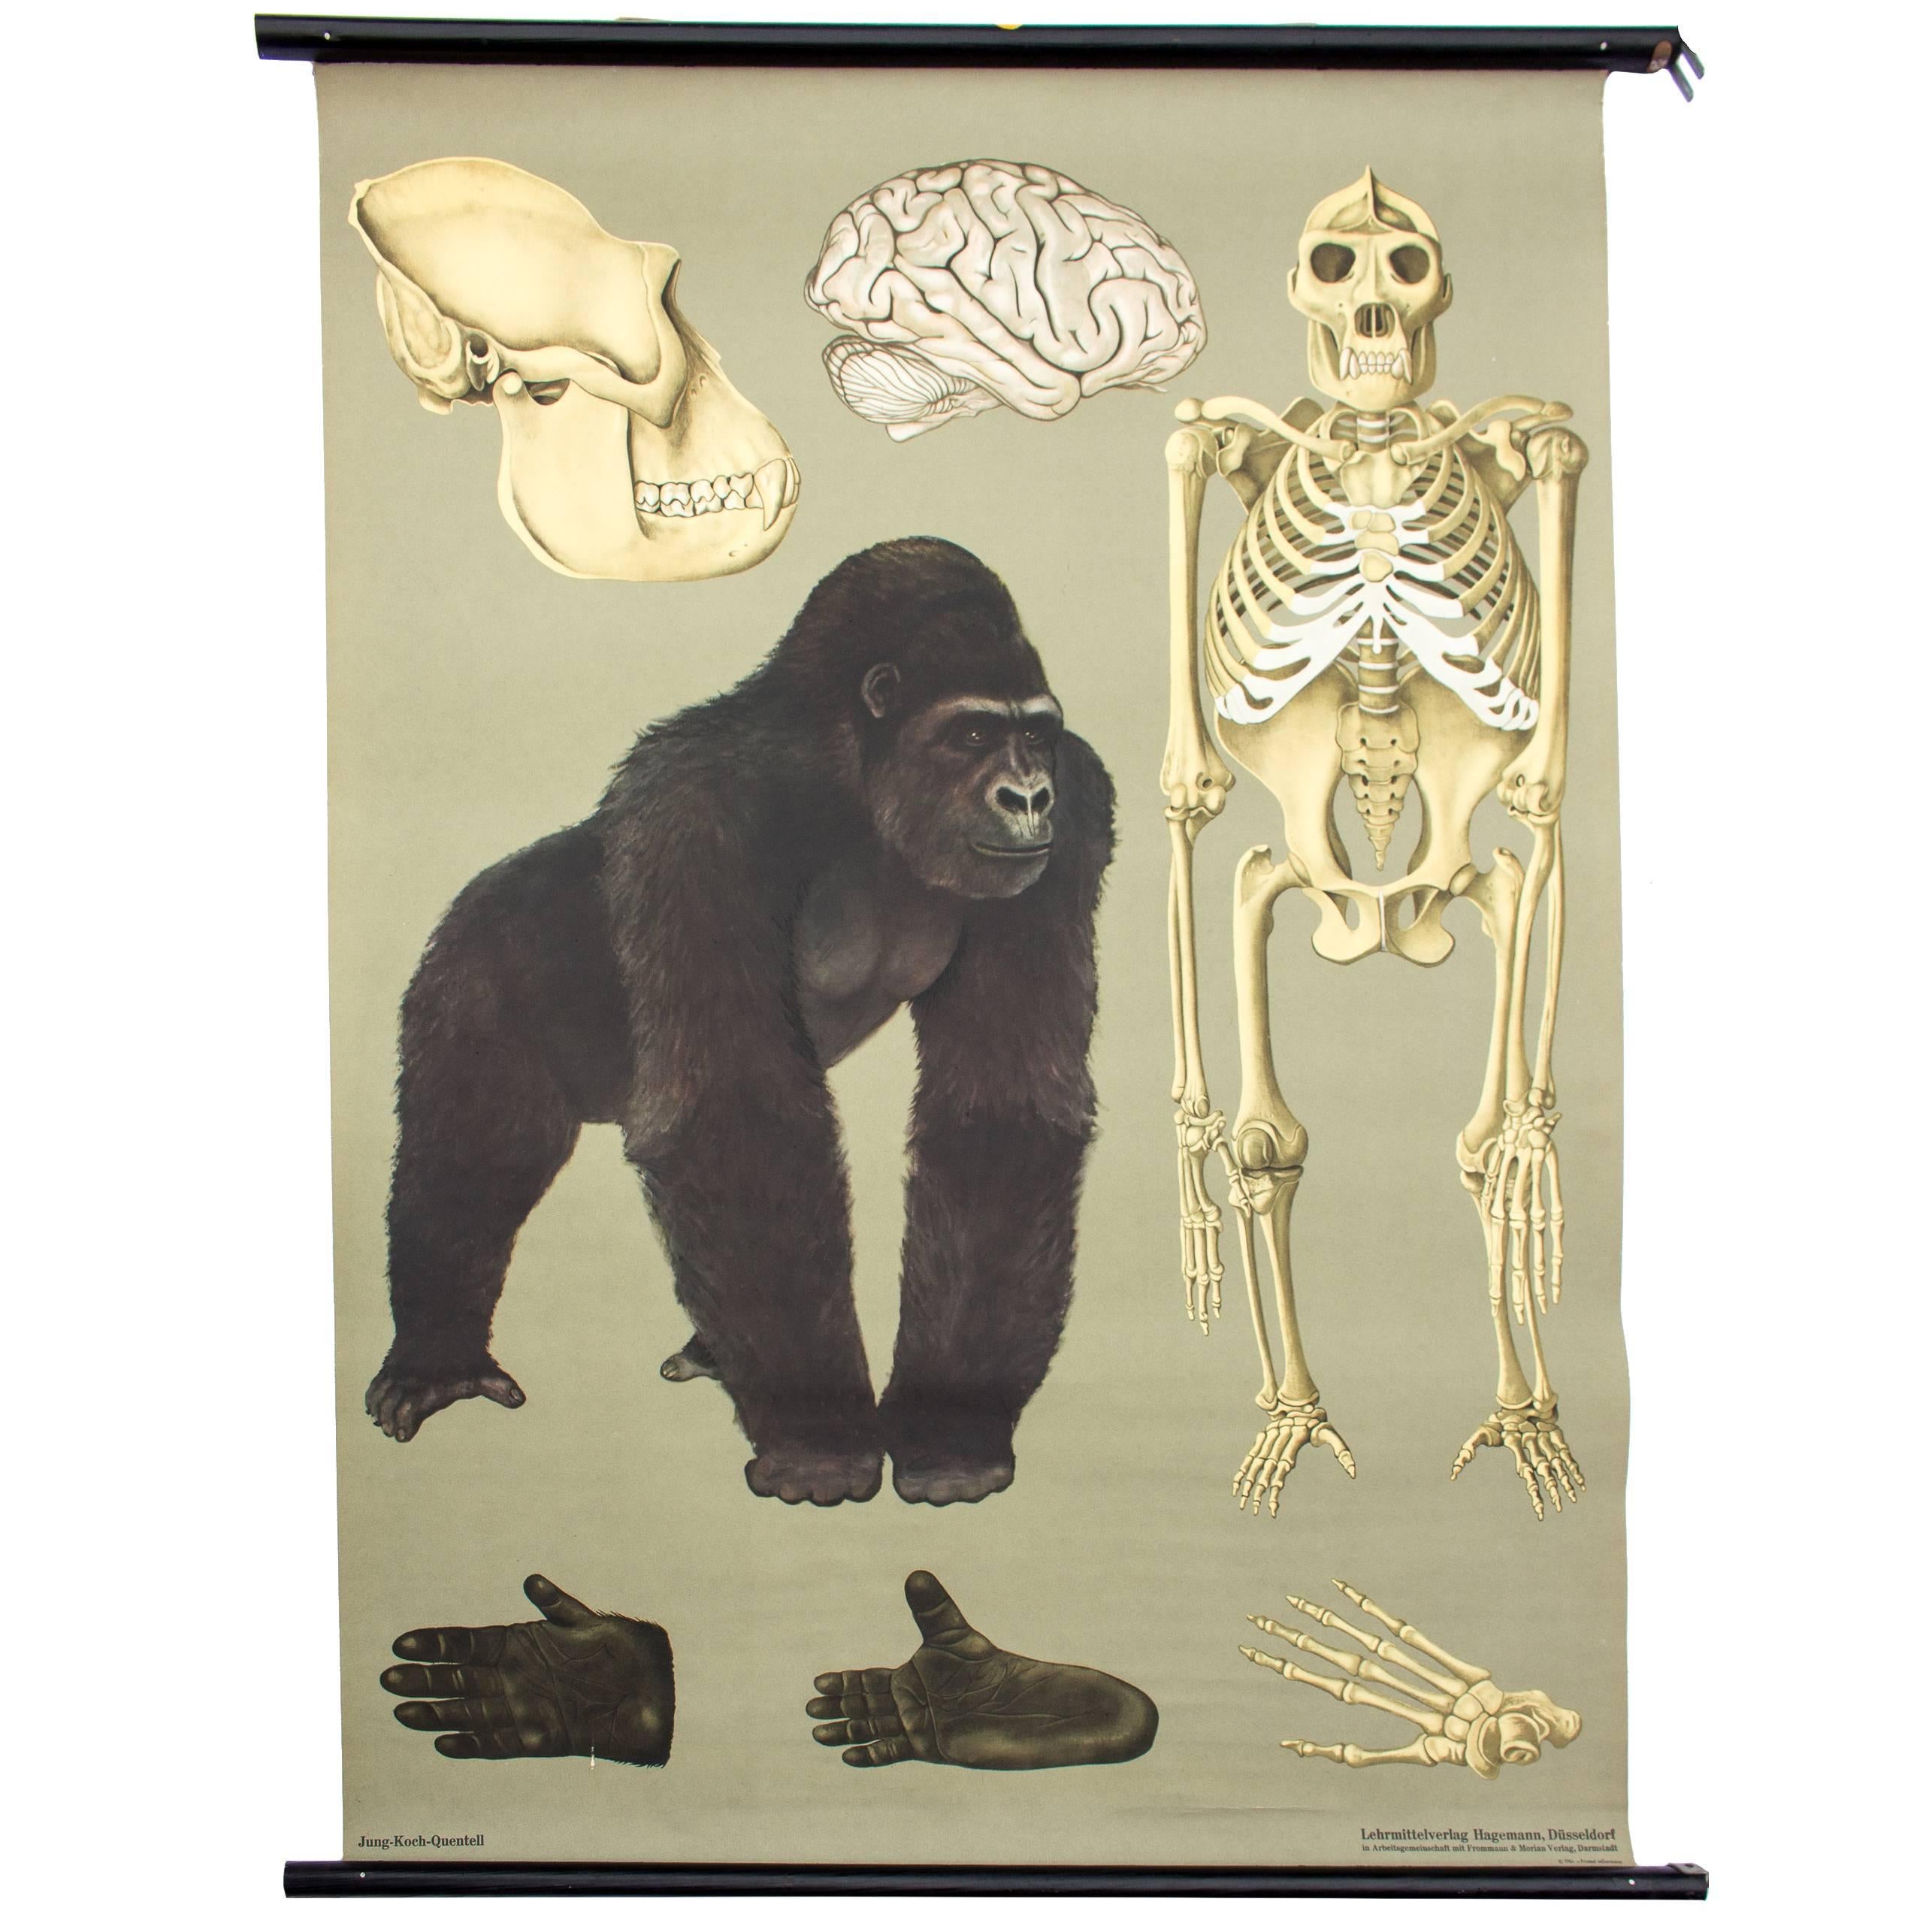 Wall Chart Gorilla from Jung-Koch-Quentell, 1961